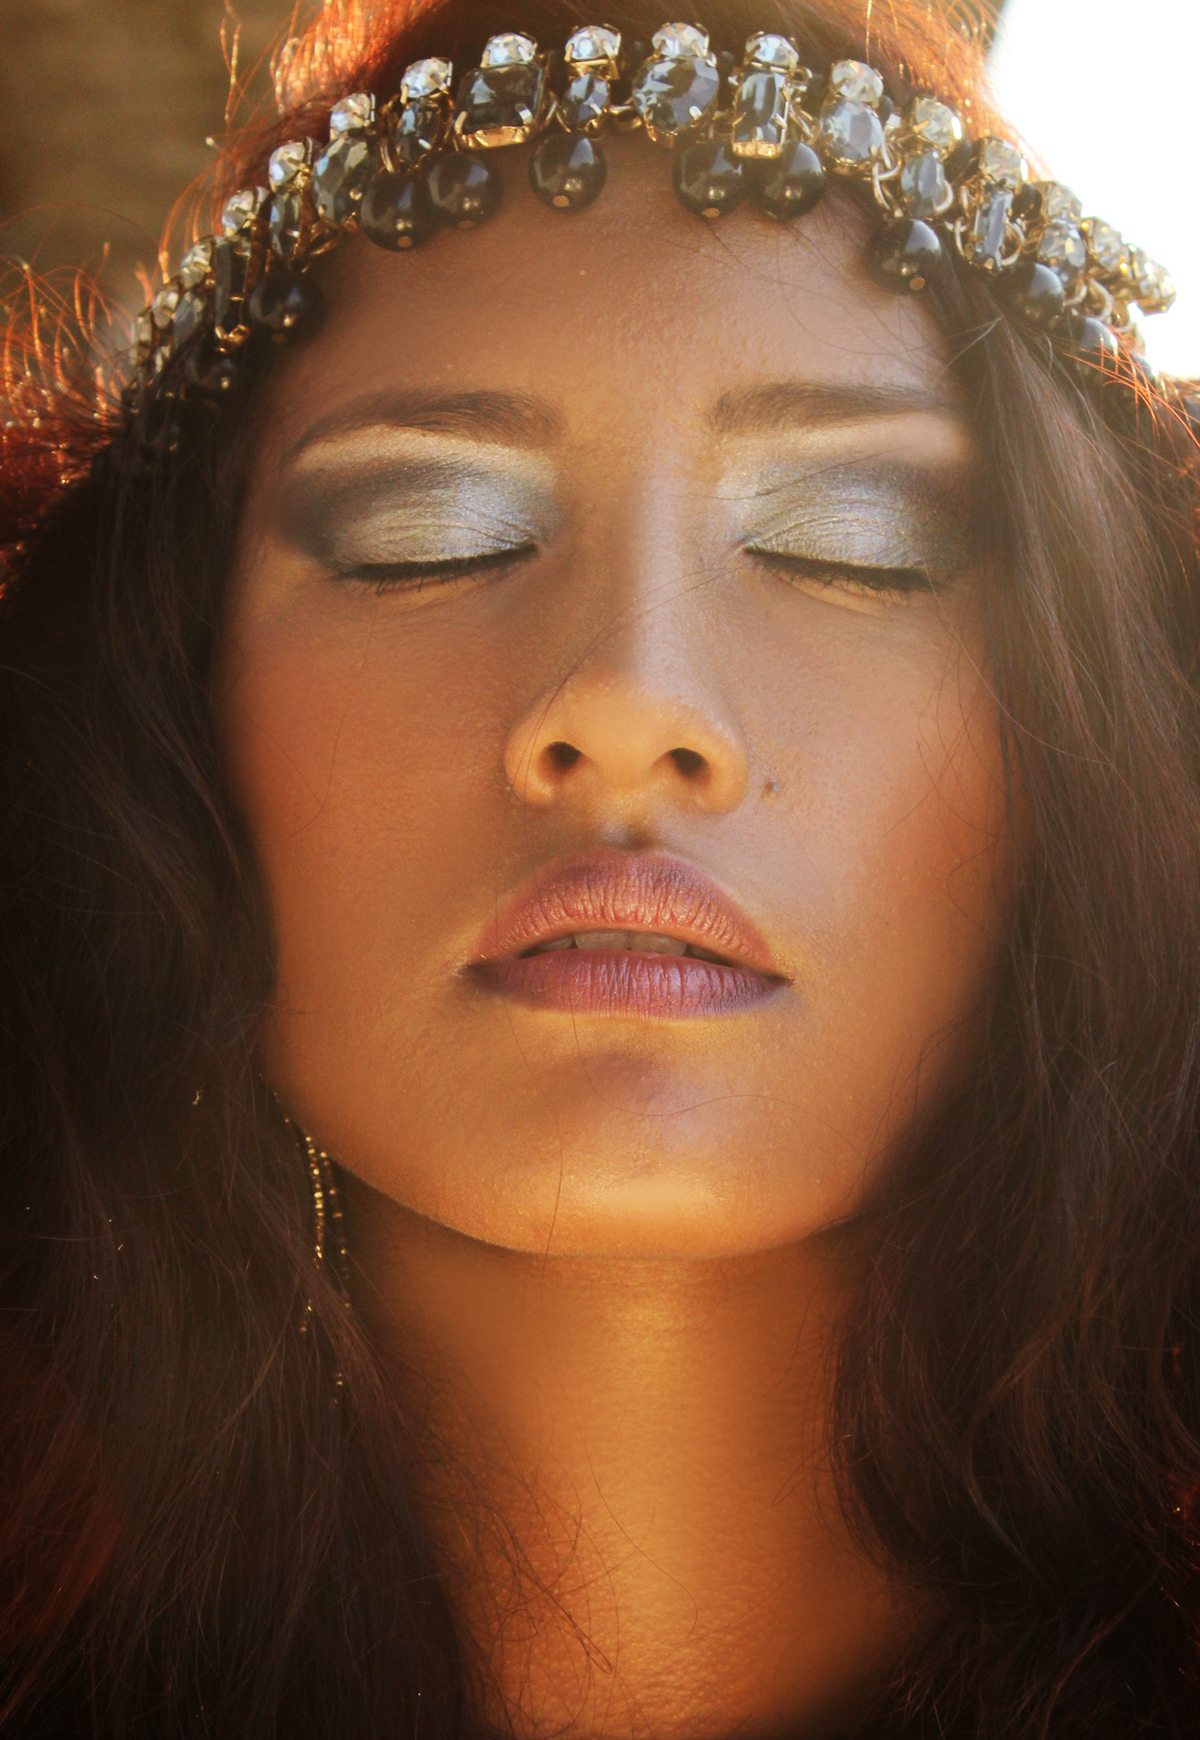 Ethnic fashionphotography makeupandhair makeup beautyshot closeup amateur photographer naturallight sunlight texture hardlight